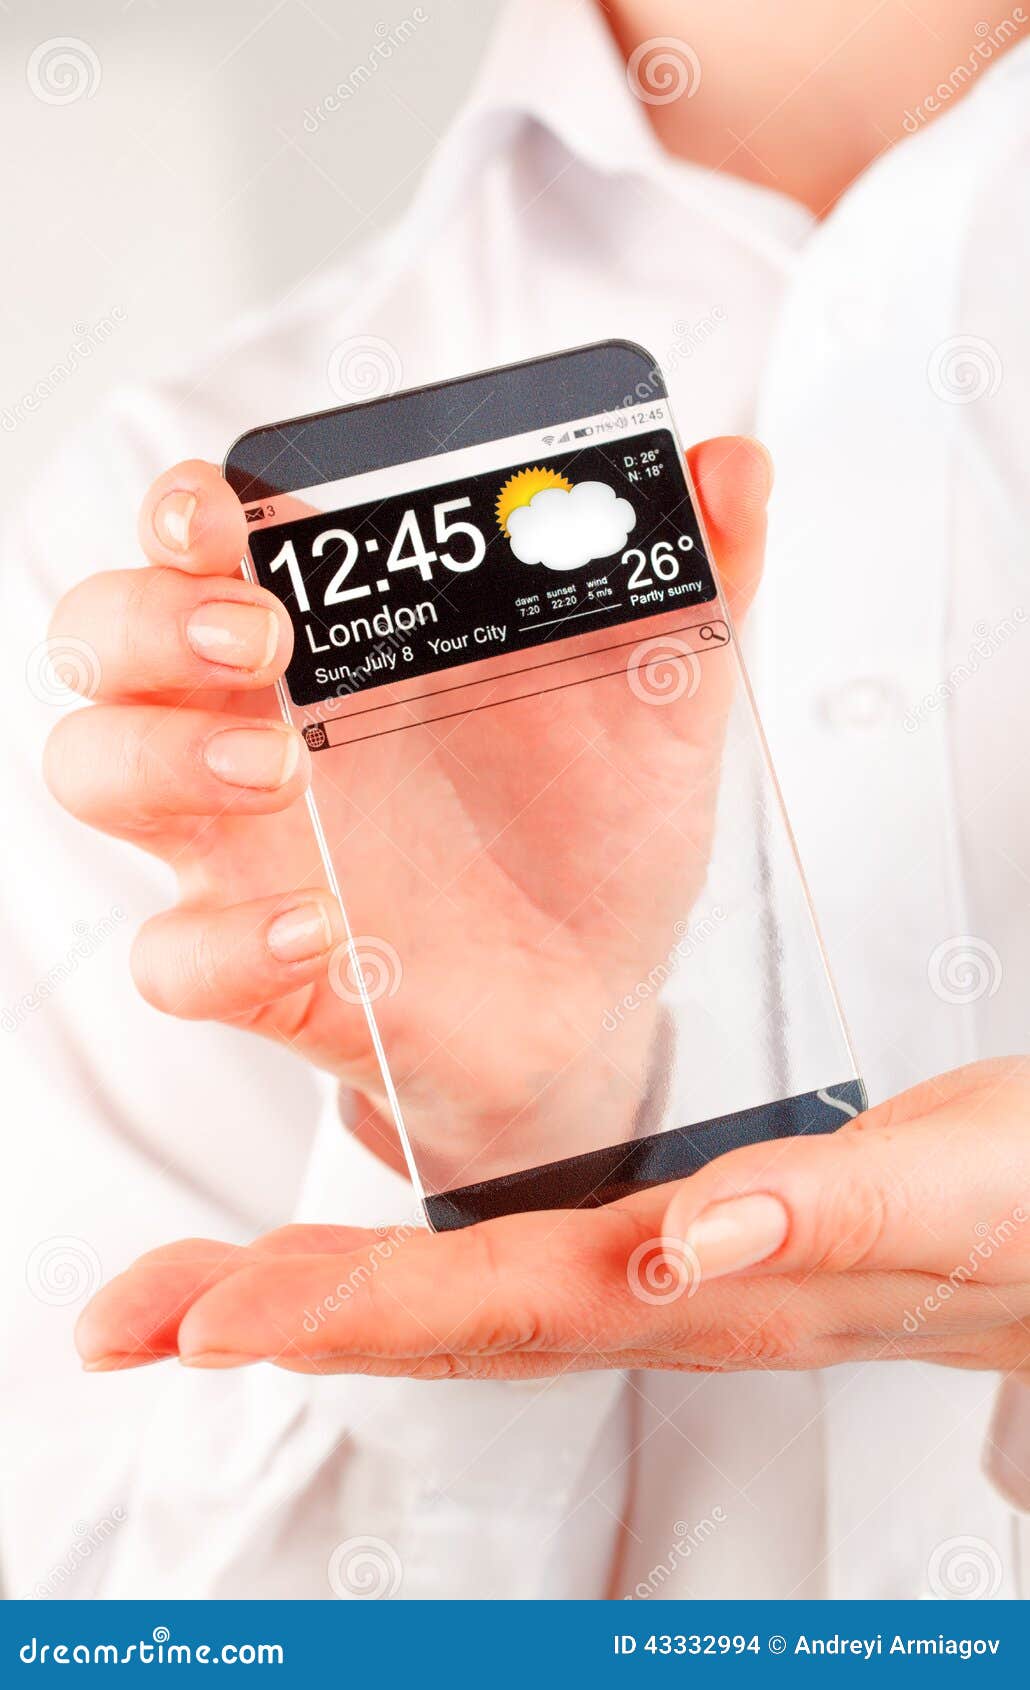 Smartphone com a tela transparente nas mãos humanas. Telefone esperto futurista (phablet) com uma exposição transparente nas mãos humanas Ideias inovativas futuras reais do conceito e a melhor humanidade das tecnologias